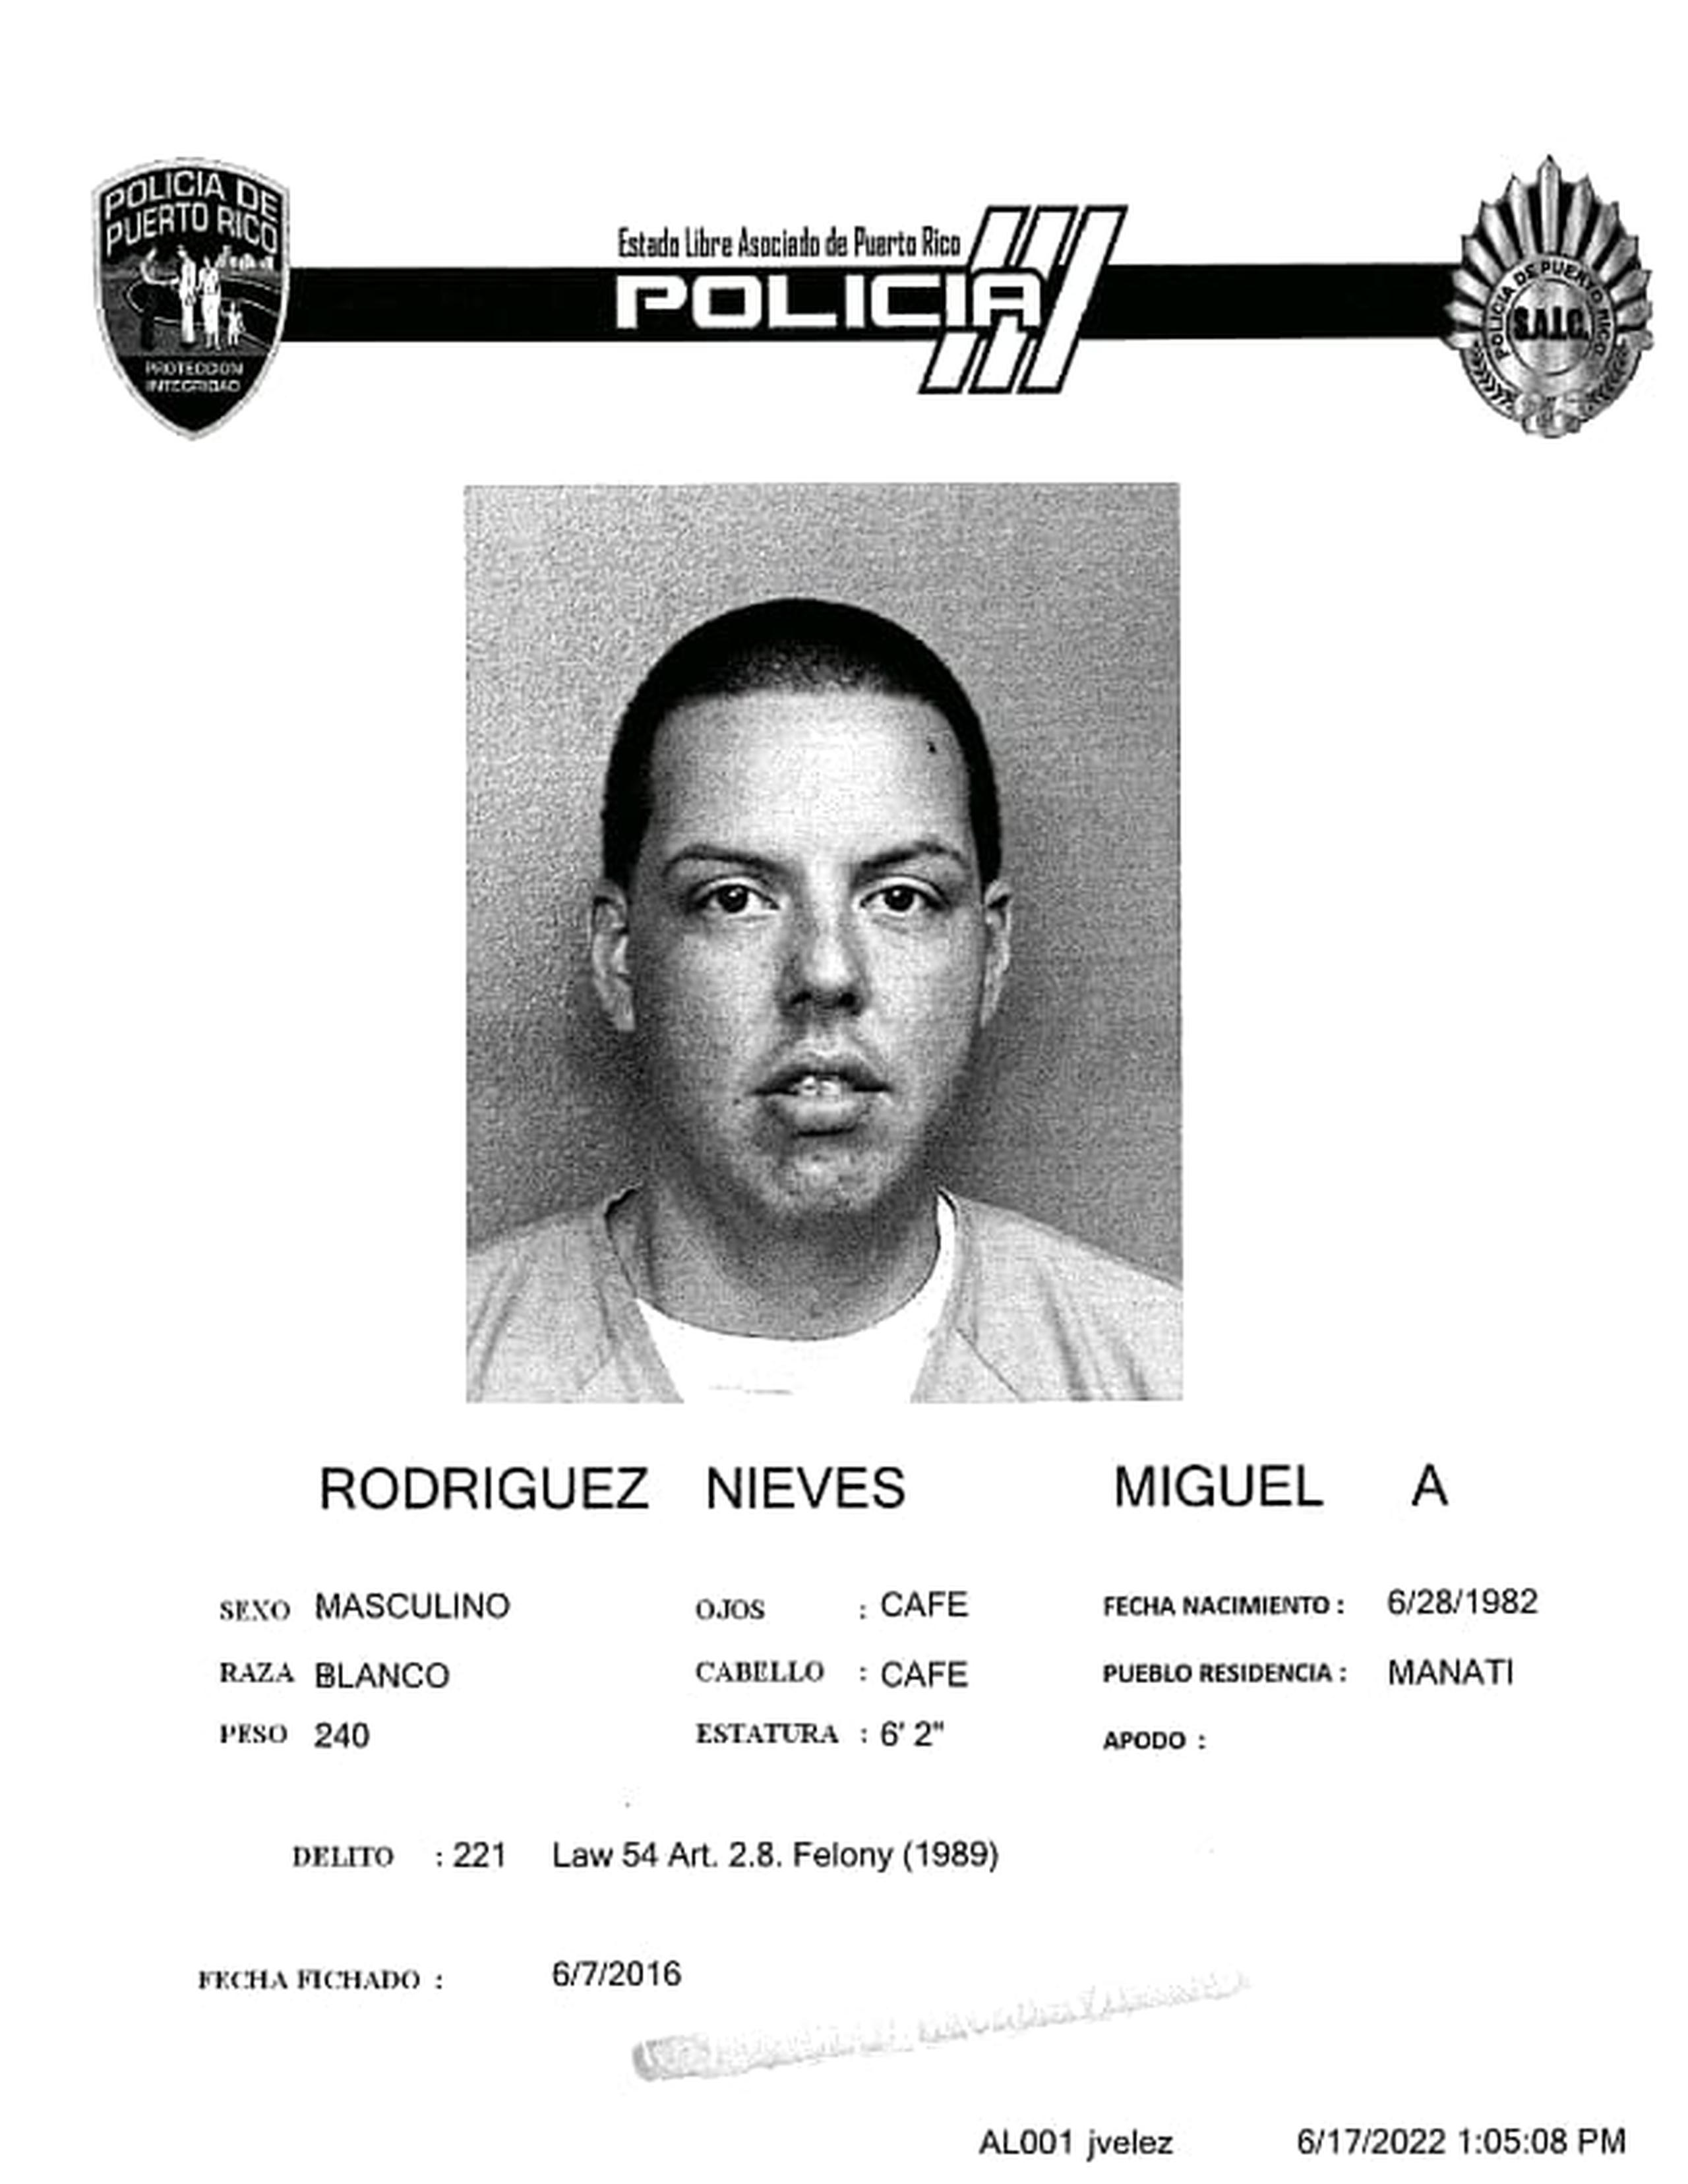 Miguel A. Rodríguez Nieves fichado en el 2016 por un caso de violencia doméstica.